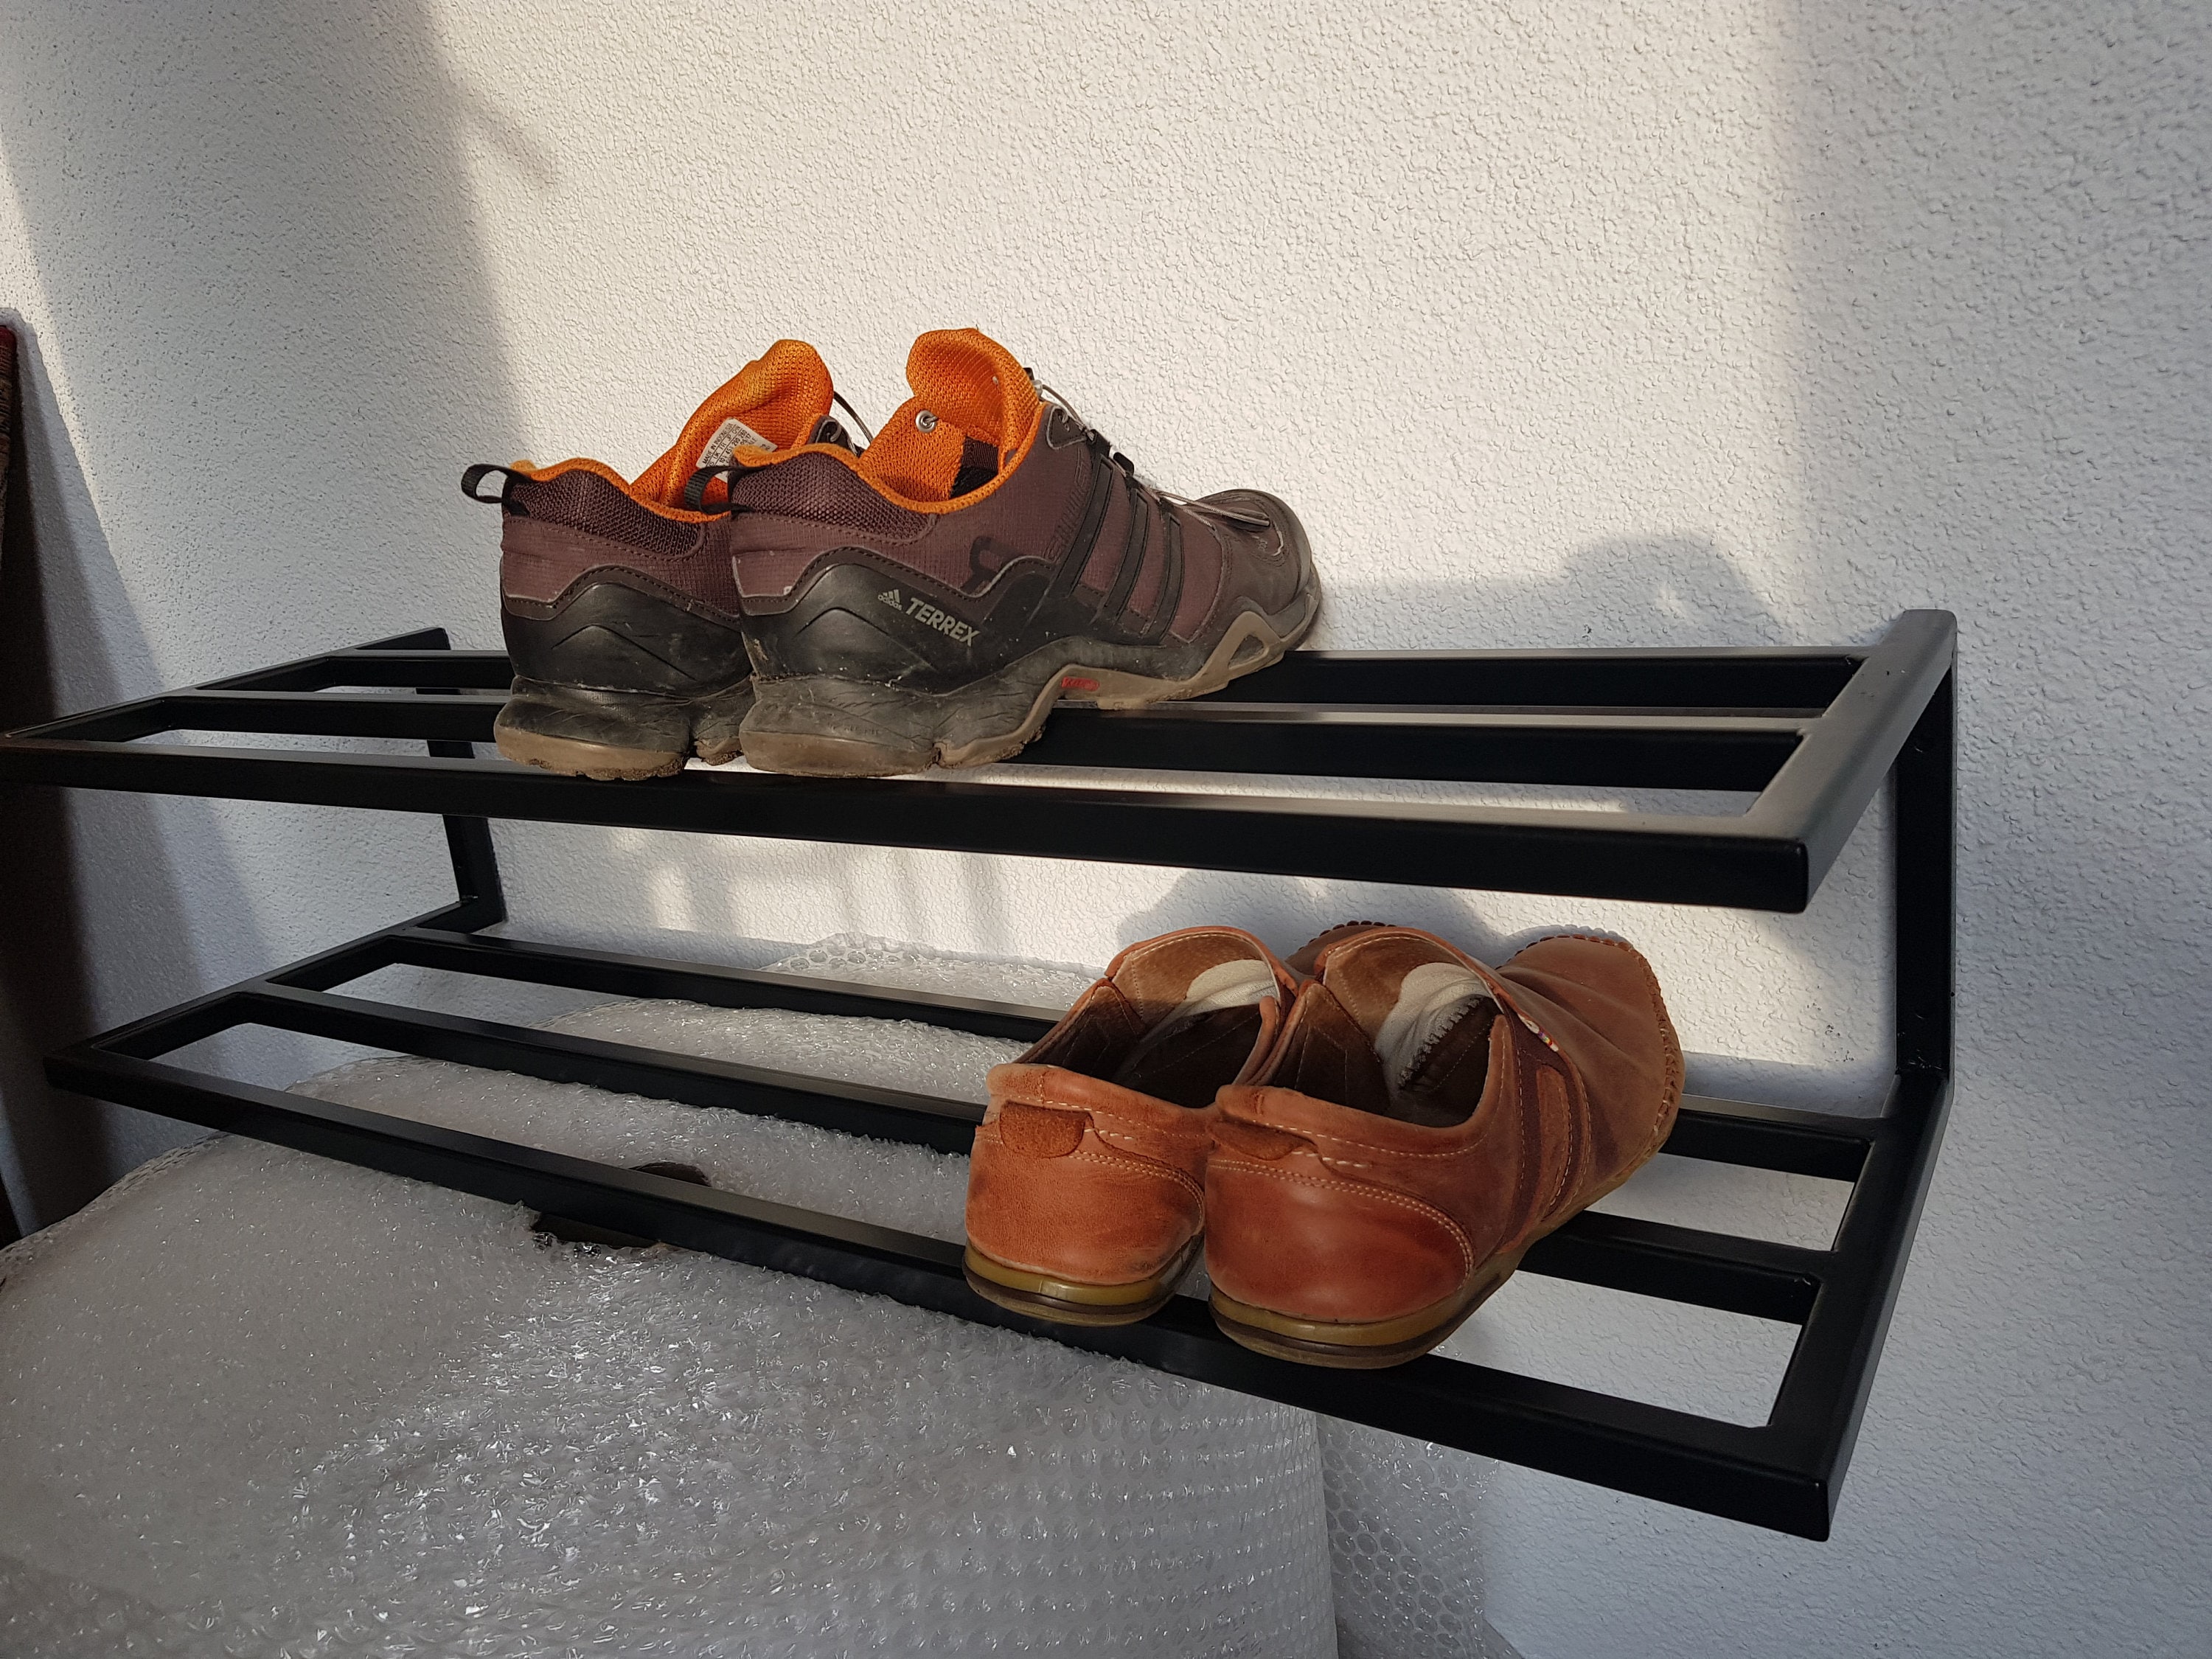 Praktische Wand Montiert Boot Organizer Stabile Metall Schuh